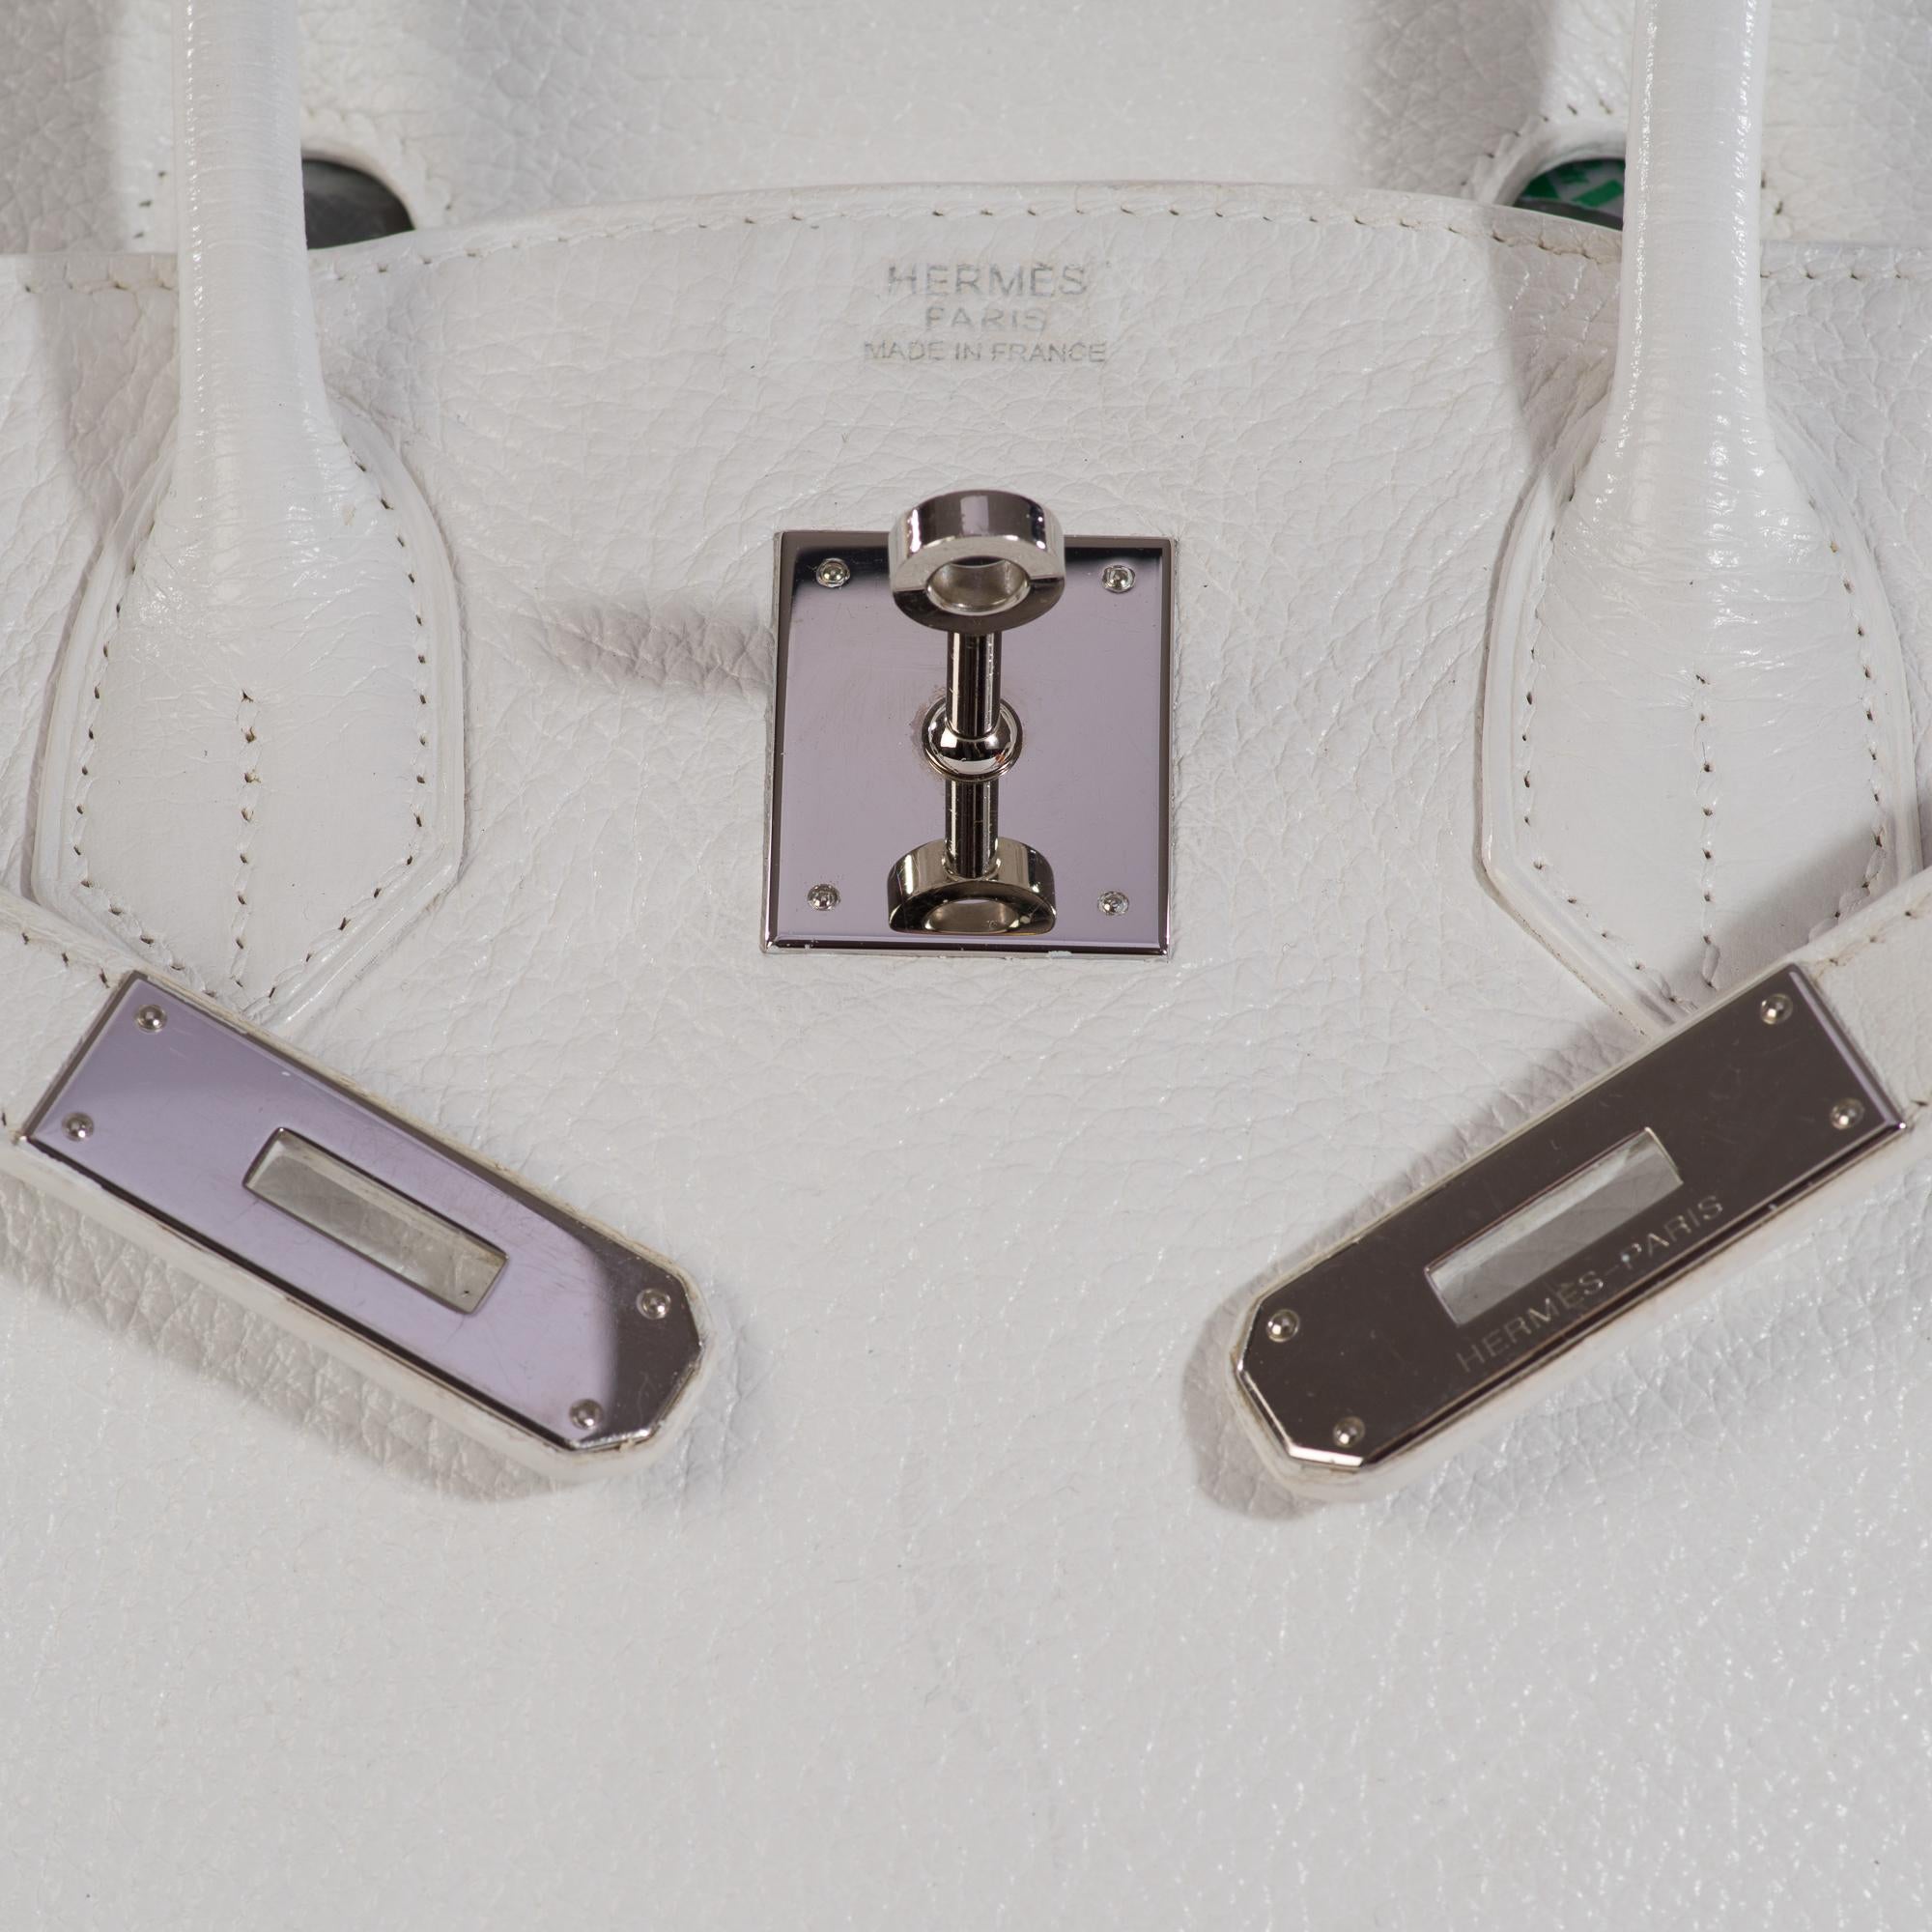 Hermes Birkin 30 in white Togo leather, Palladium Hardware, excellent condition! 2